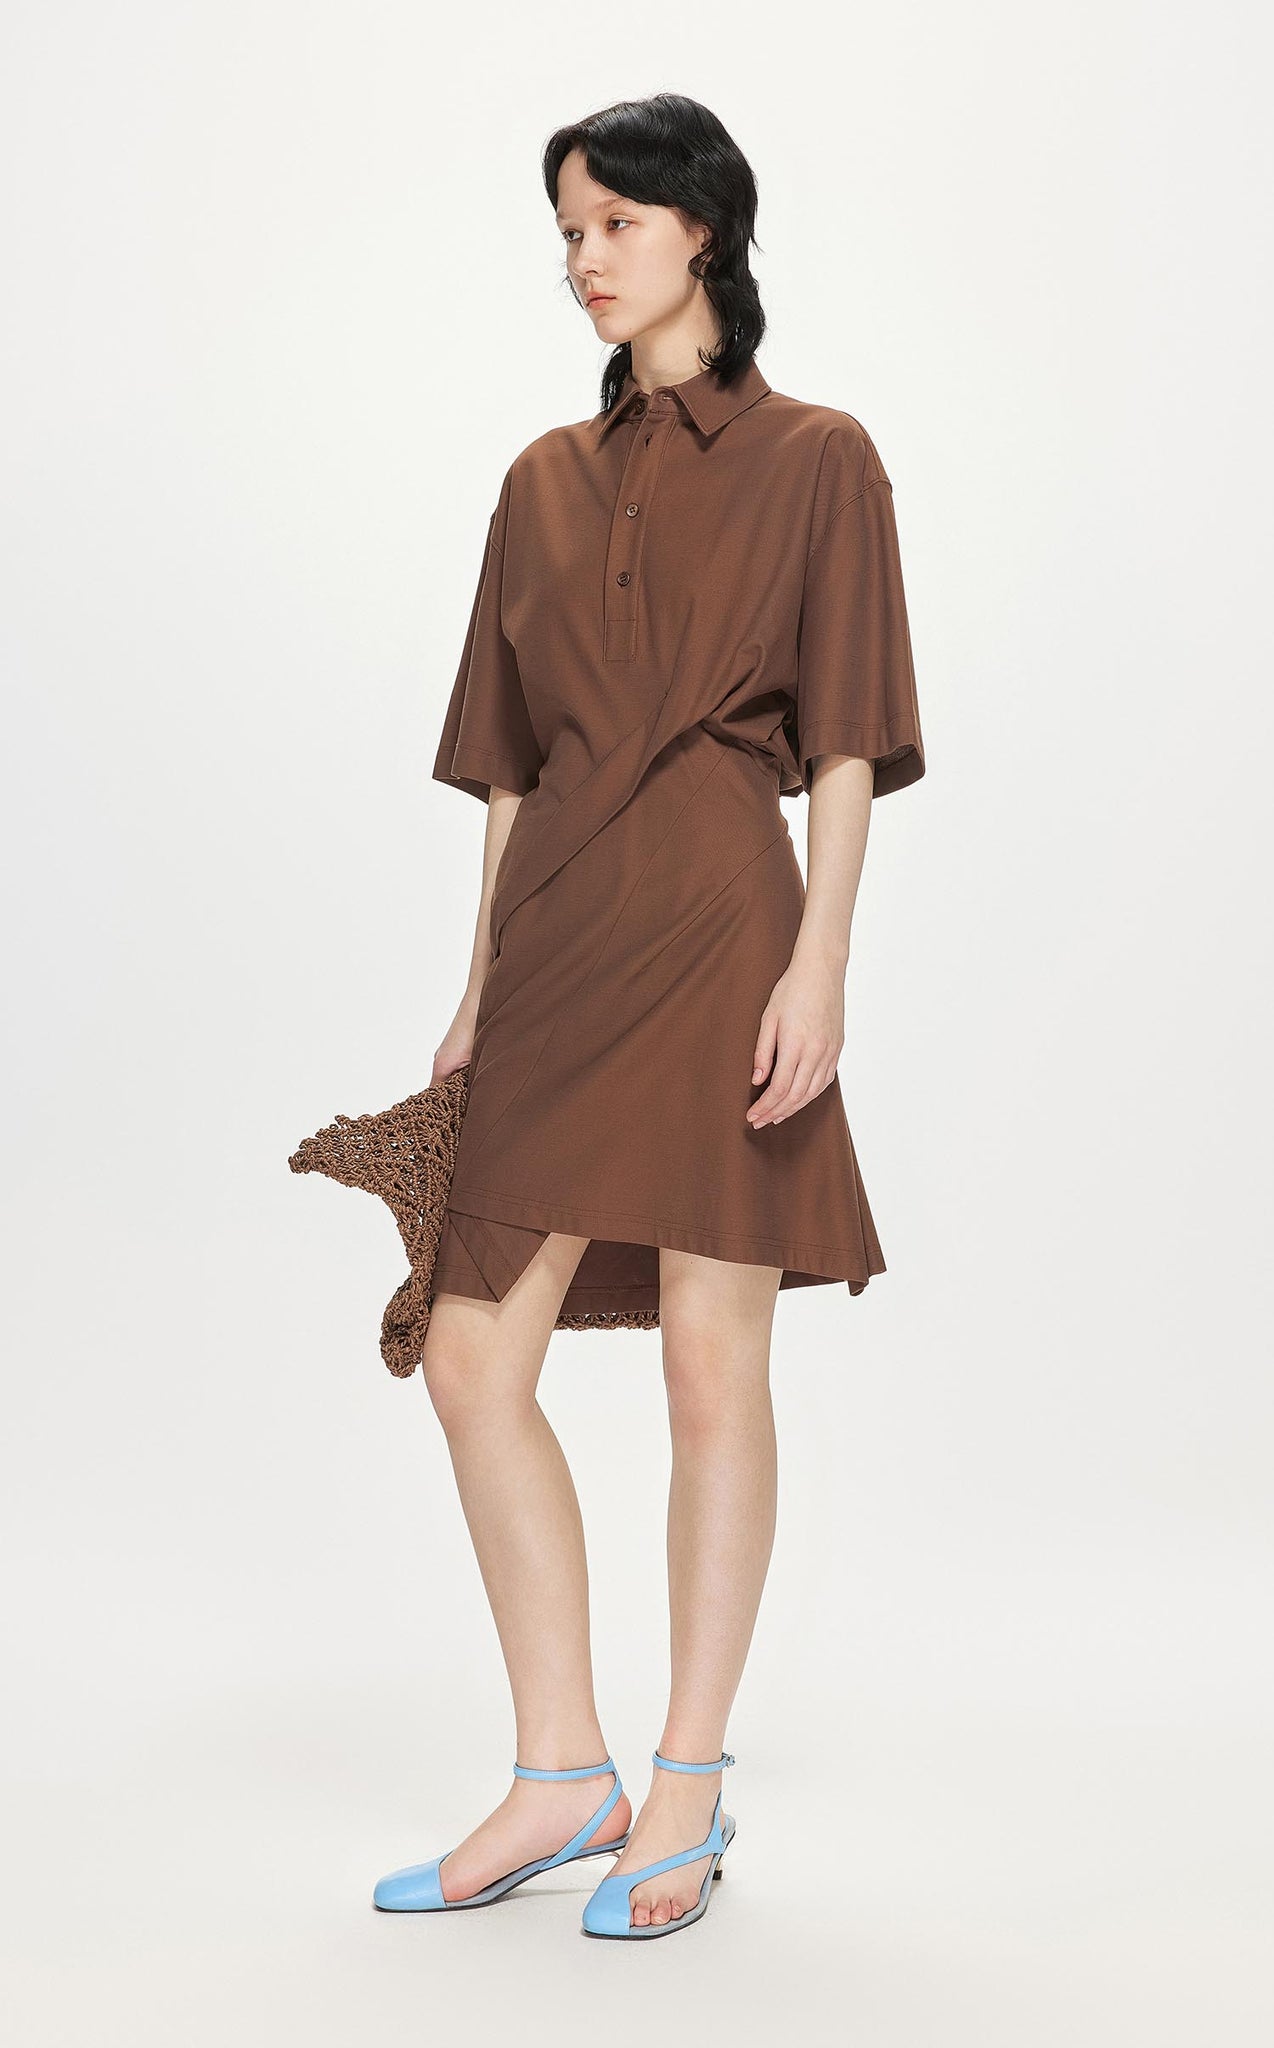 Dresses / JNBY Short Sleeve Shirt Dress (100% Cotton)